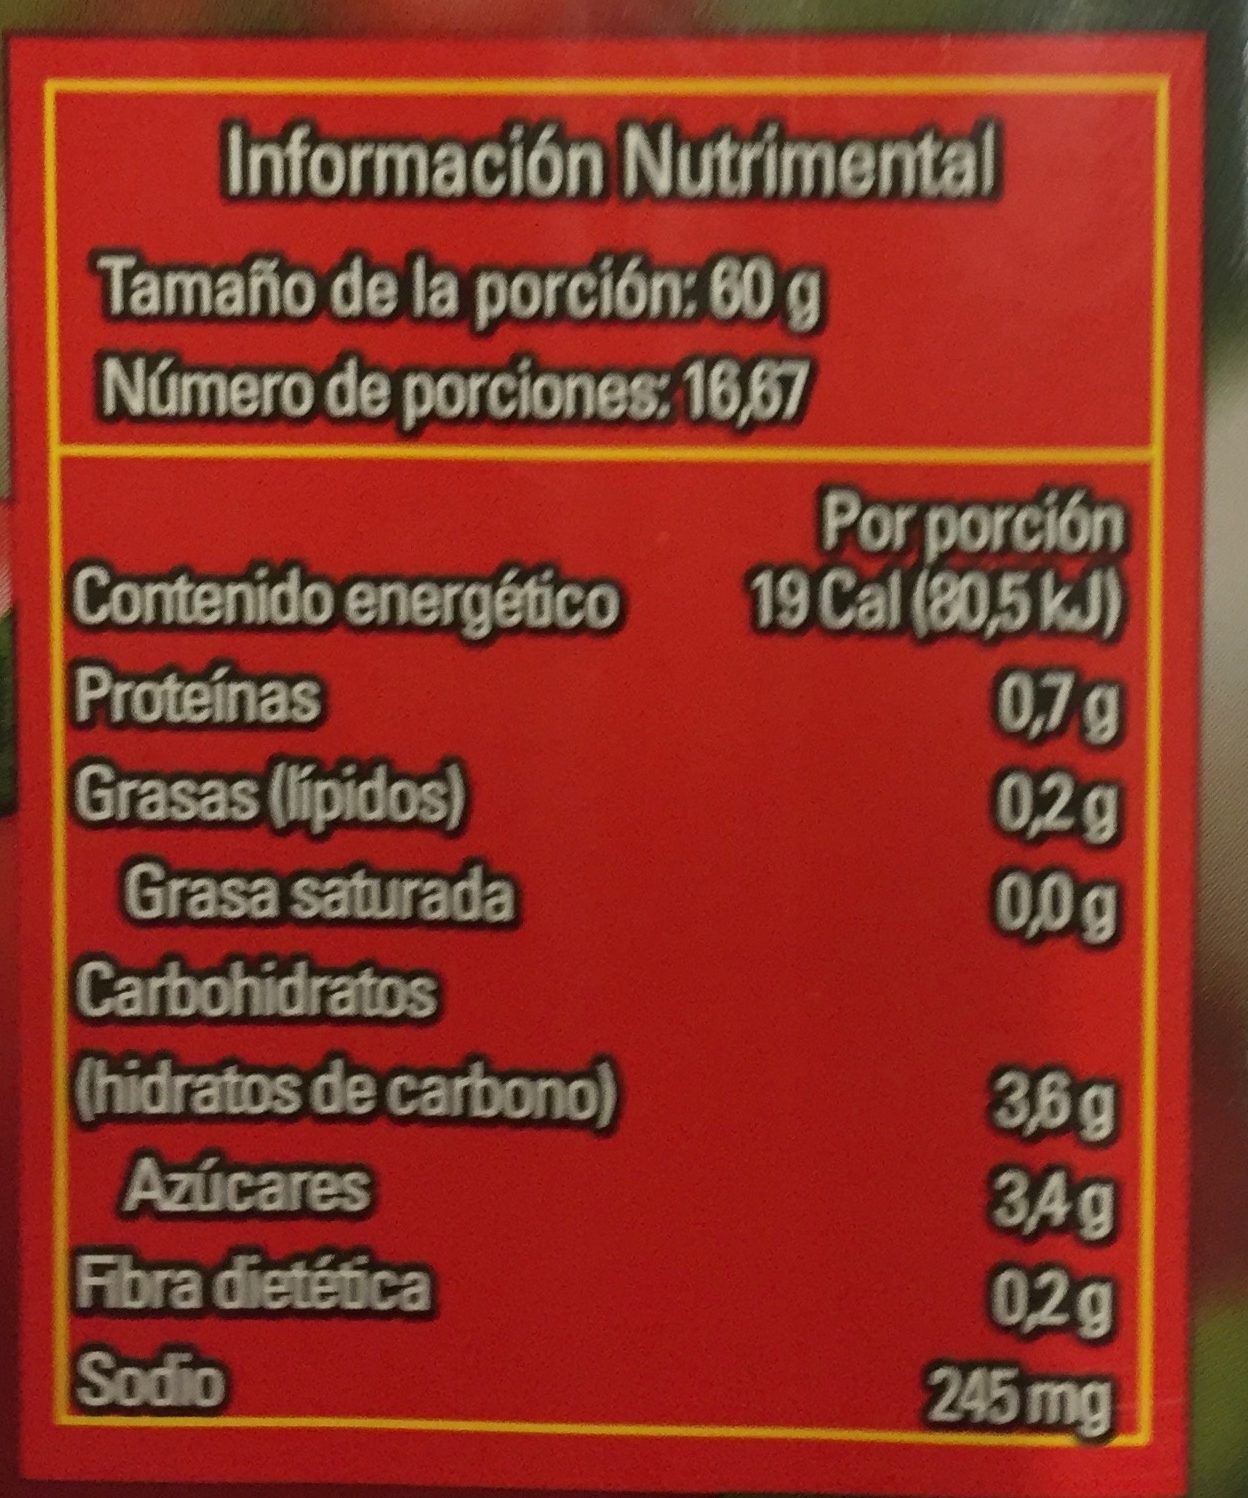 PURE DE TOMATE NATURAL - Nutrition facts - es